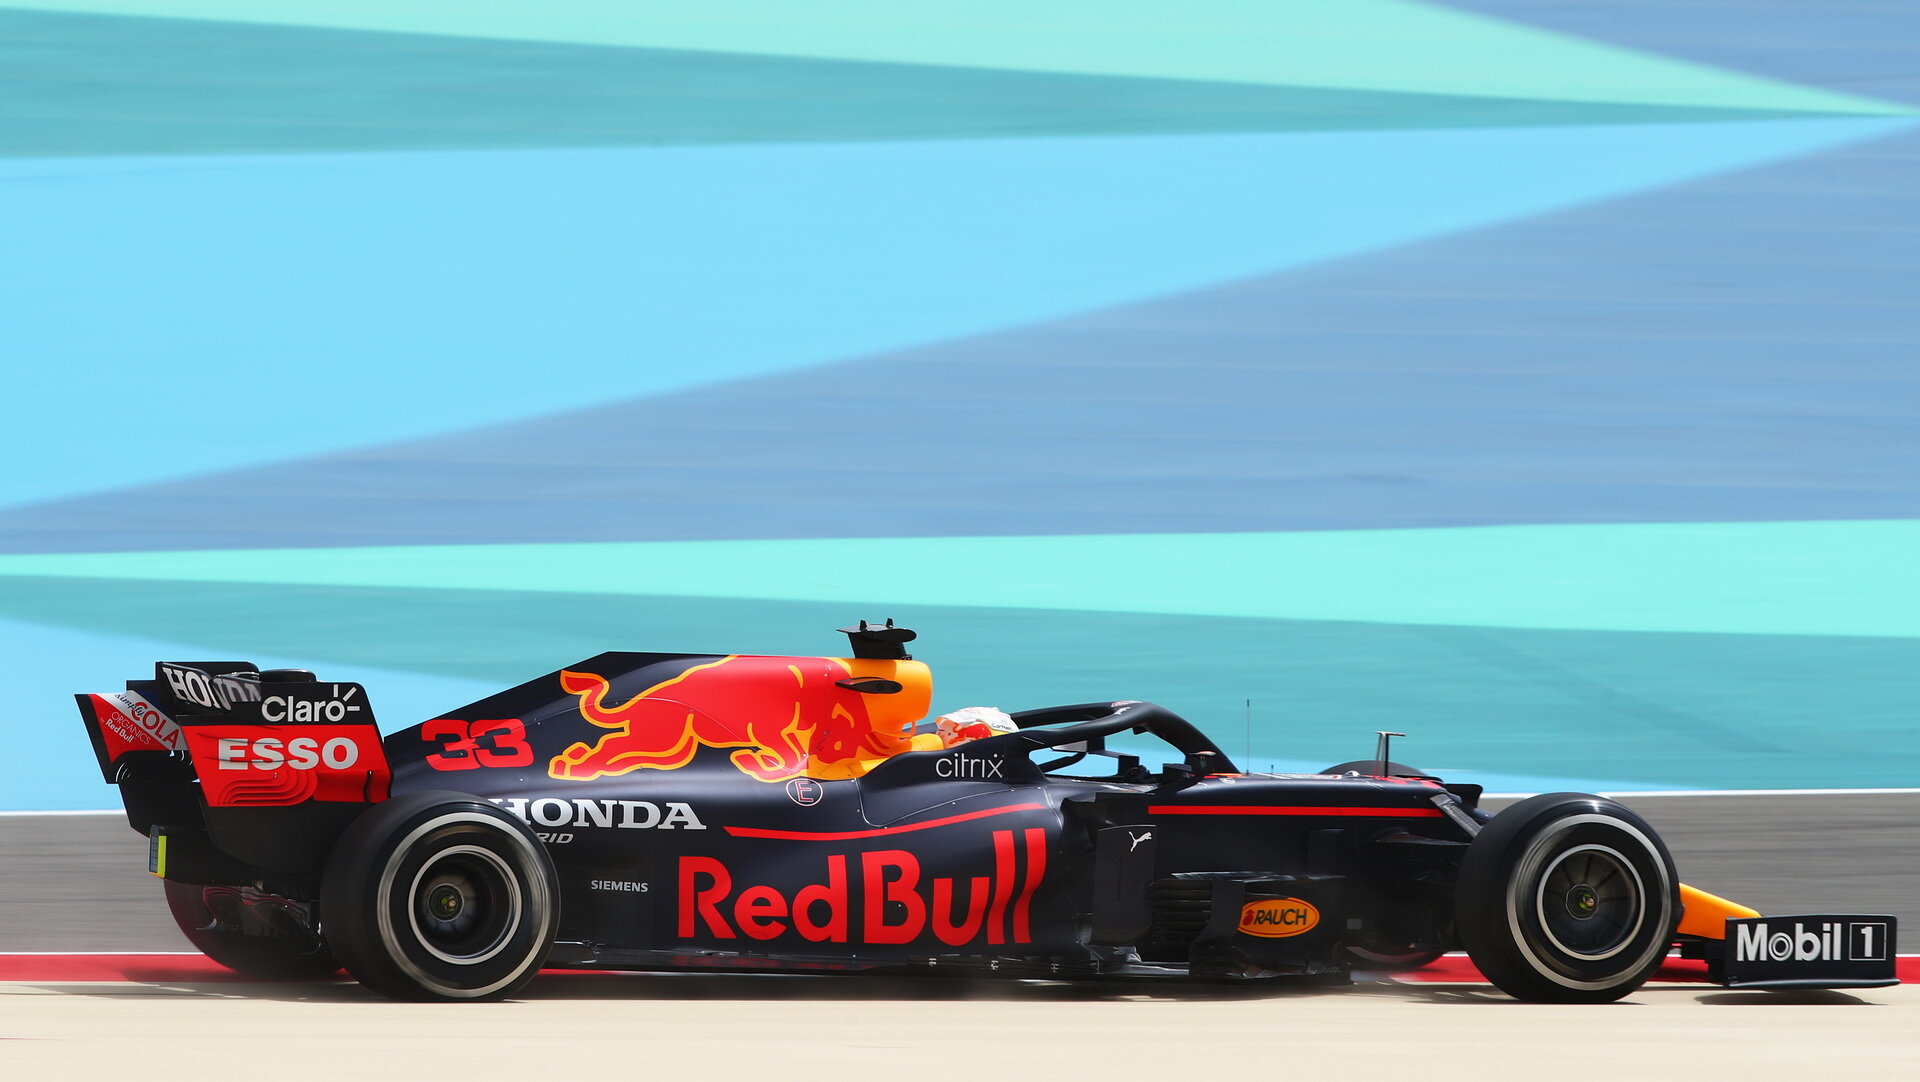 Max Verstappen - první předsezonní testy v Bahrajnu